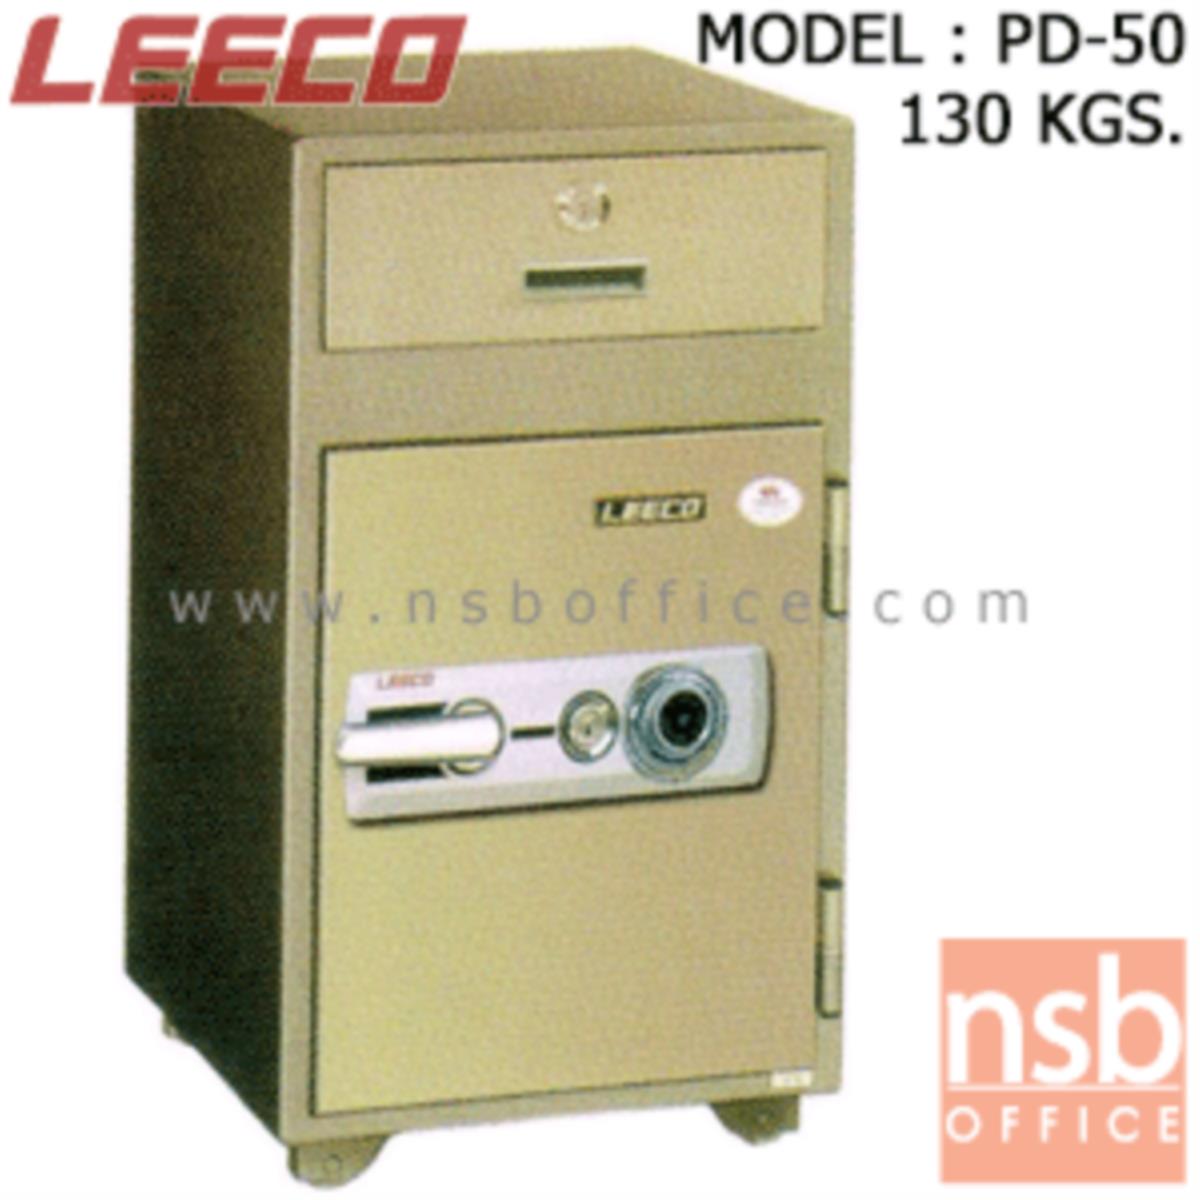 ตู้เซฟแคชเชียร์ 130 กก. ลีโก้ รุ่น LEECO-PD-50  มี 1 กุญแจ 1 รหัส (เปลี่ยนรหัสไม่ได้)